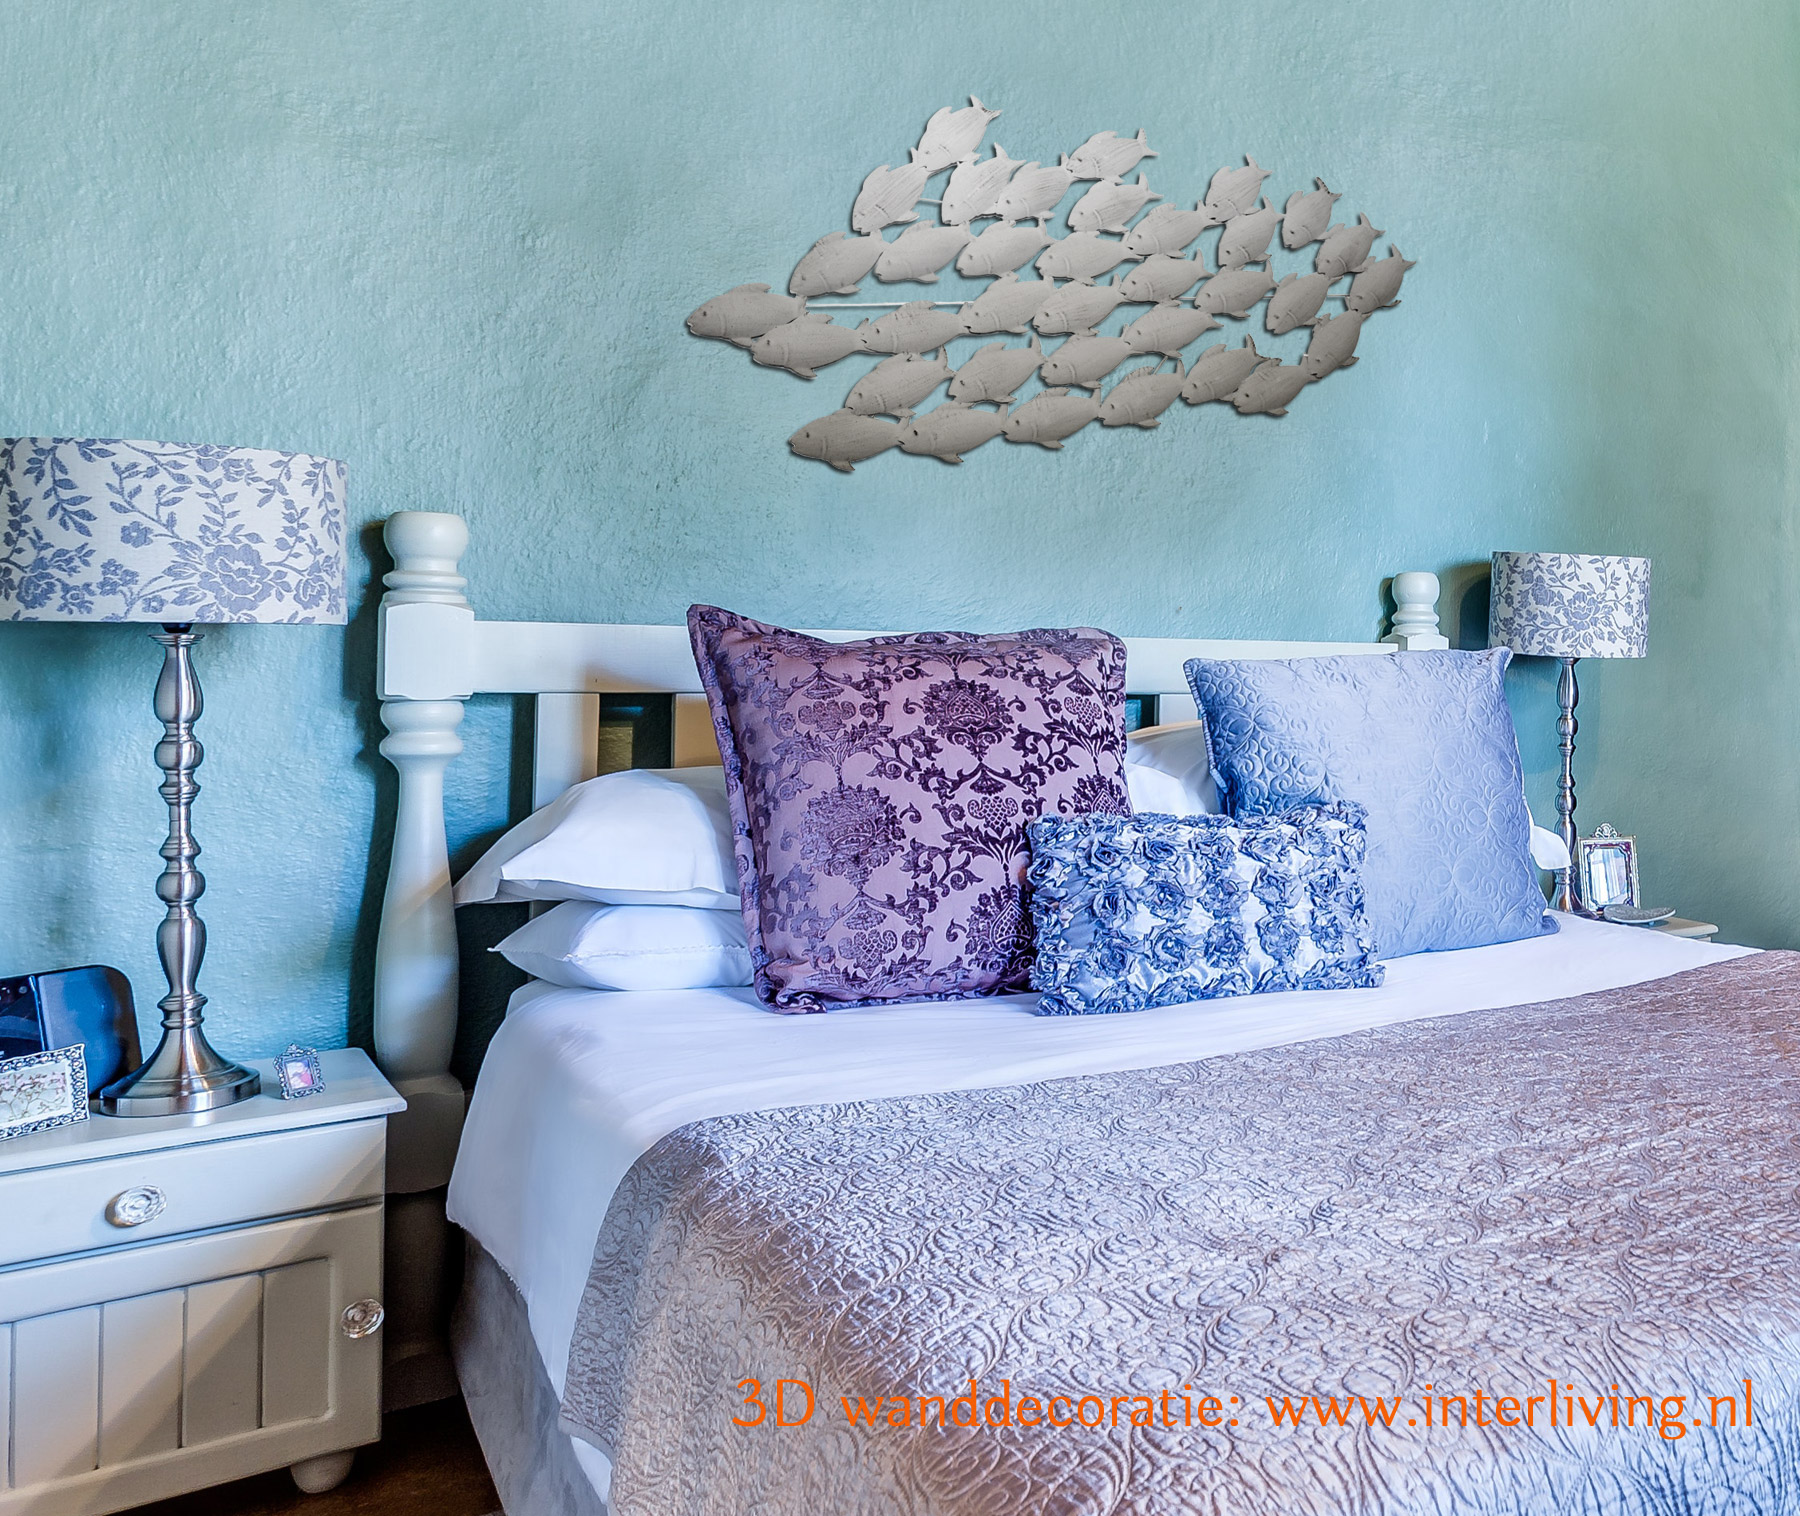 Slaapkamer muurdecoratie 3D - sfeervolle styling van metaal - groep of school vissen in grijs tinten